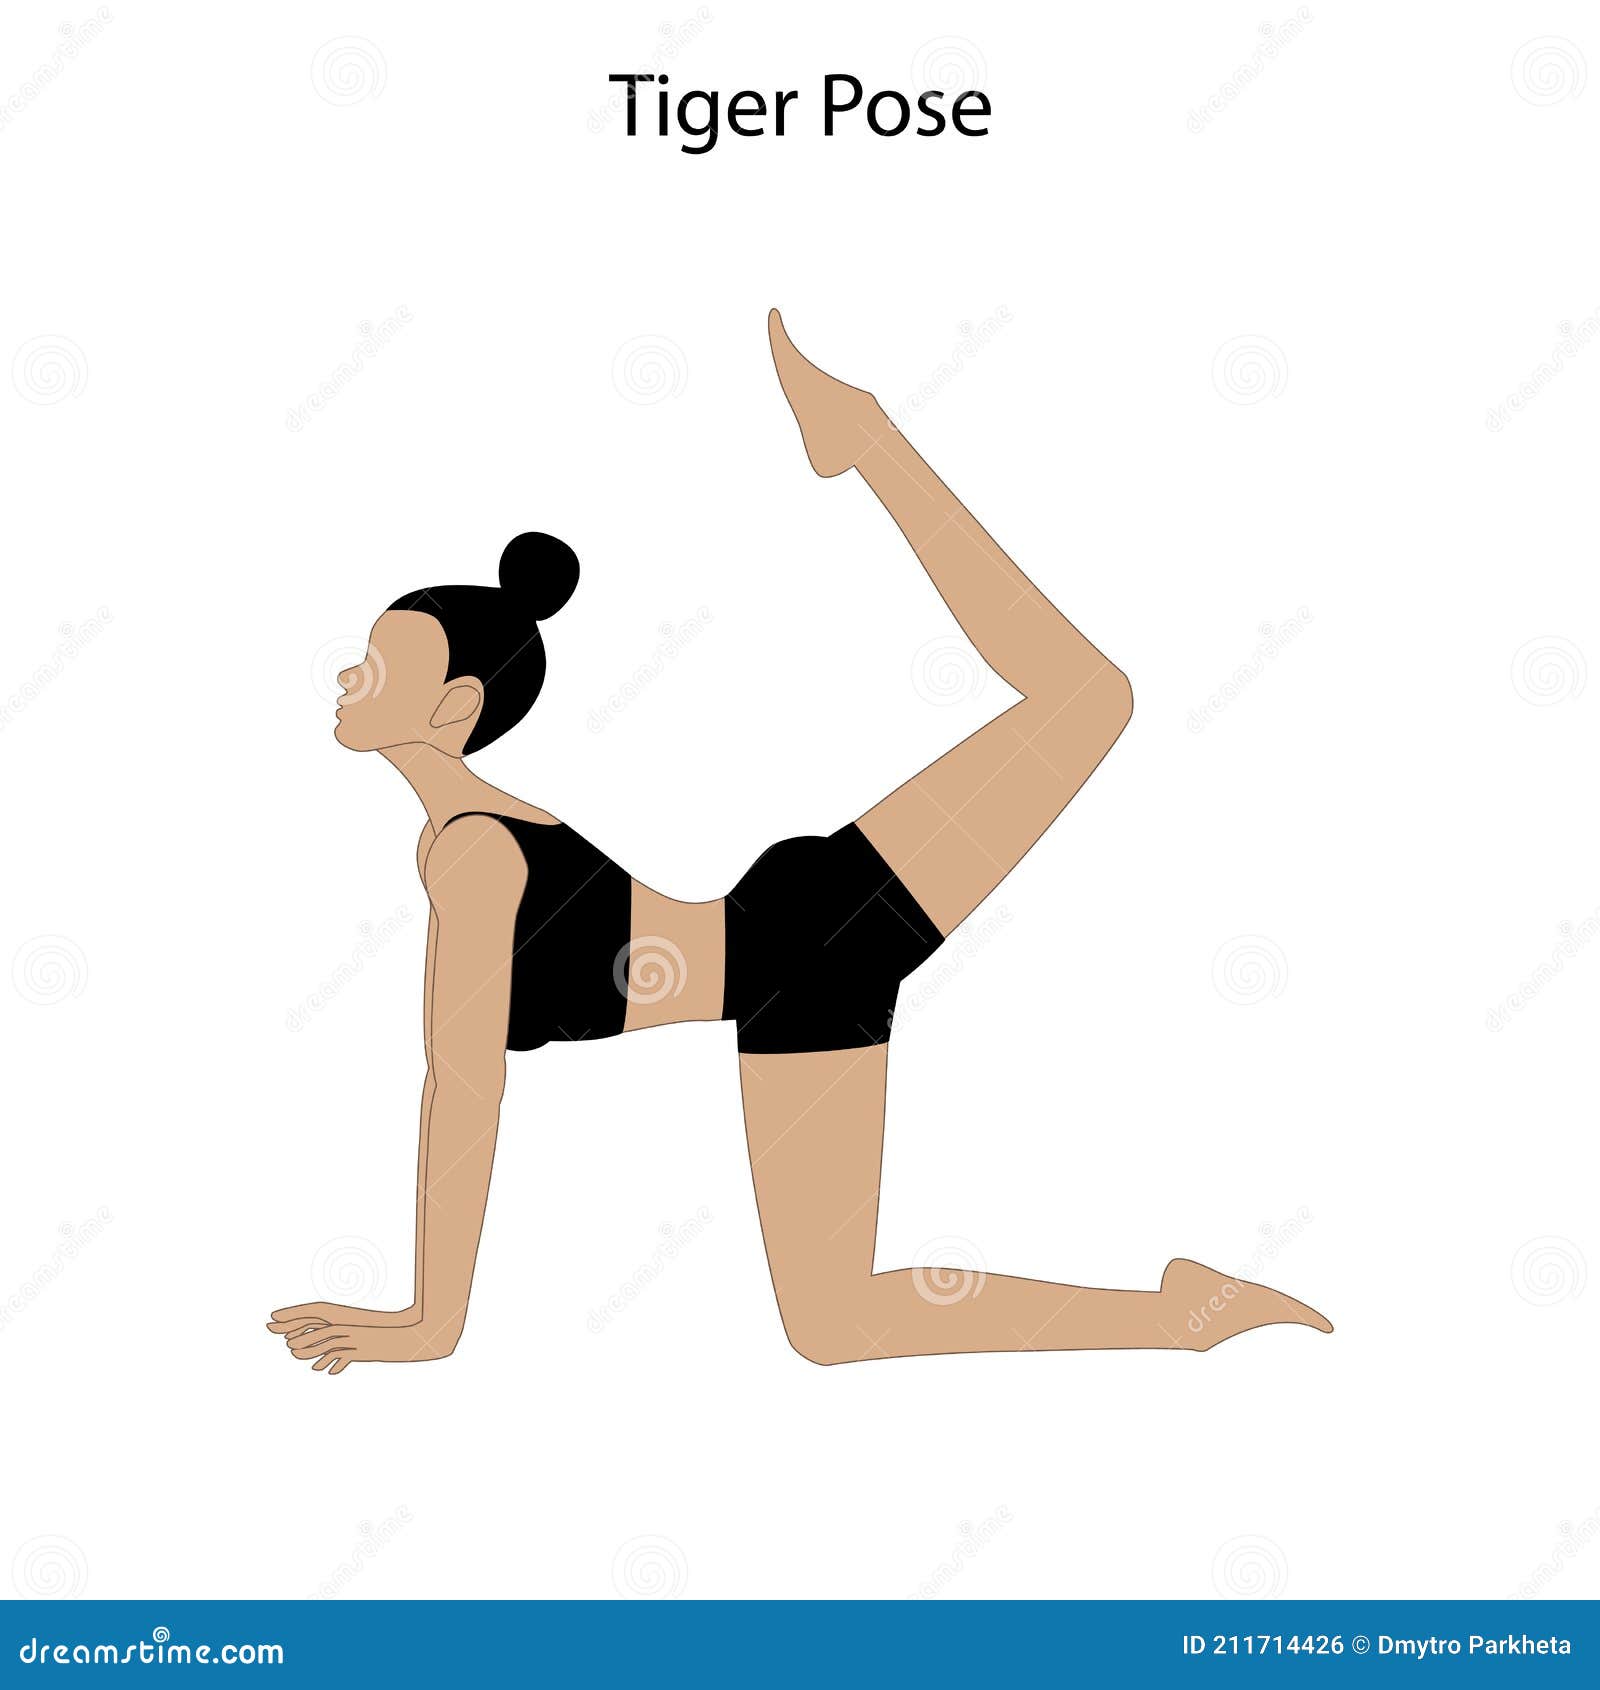 Vyaghrasan(Tiger Pose) : Benefits, Method, Precautions, Modifications